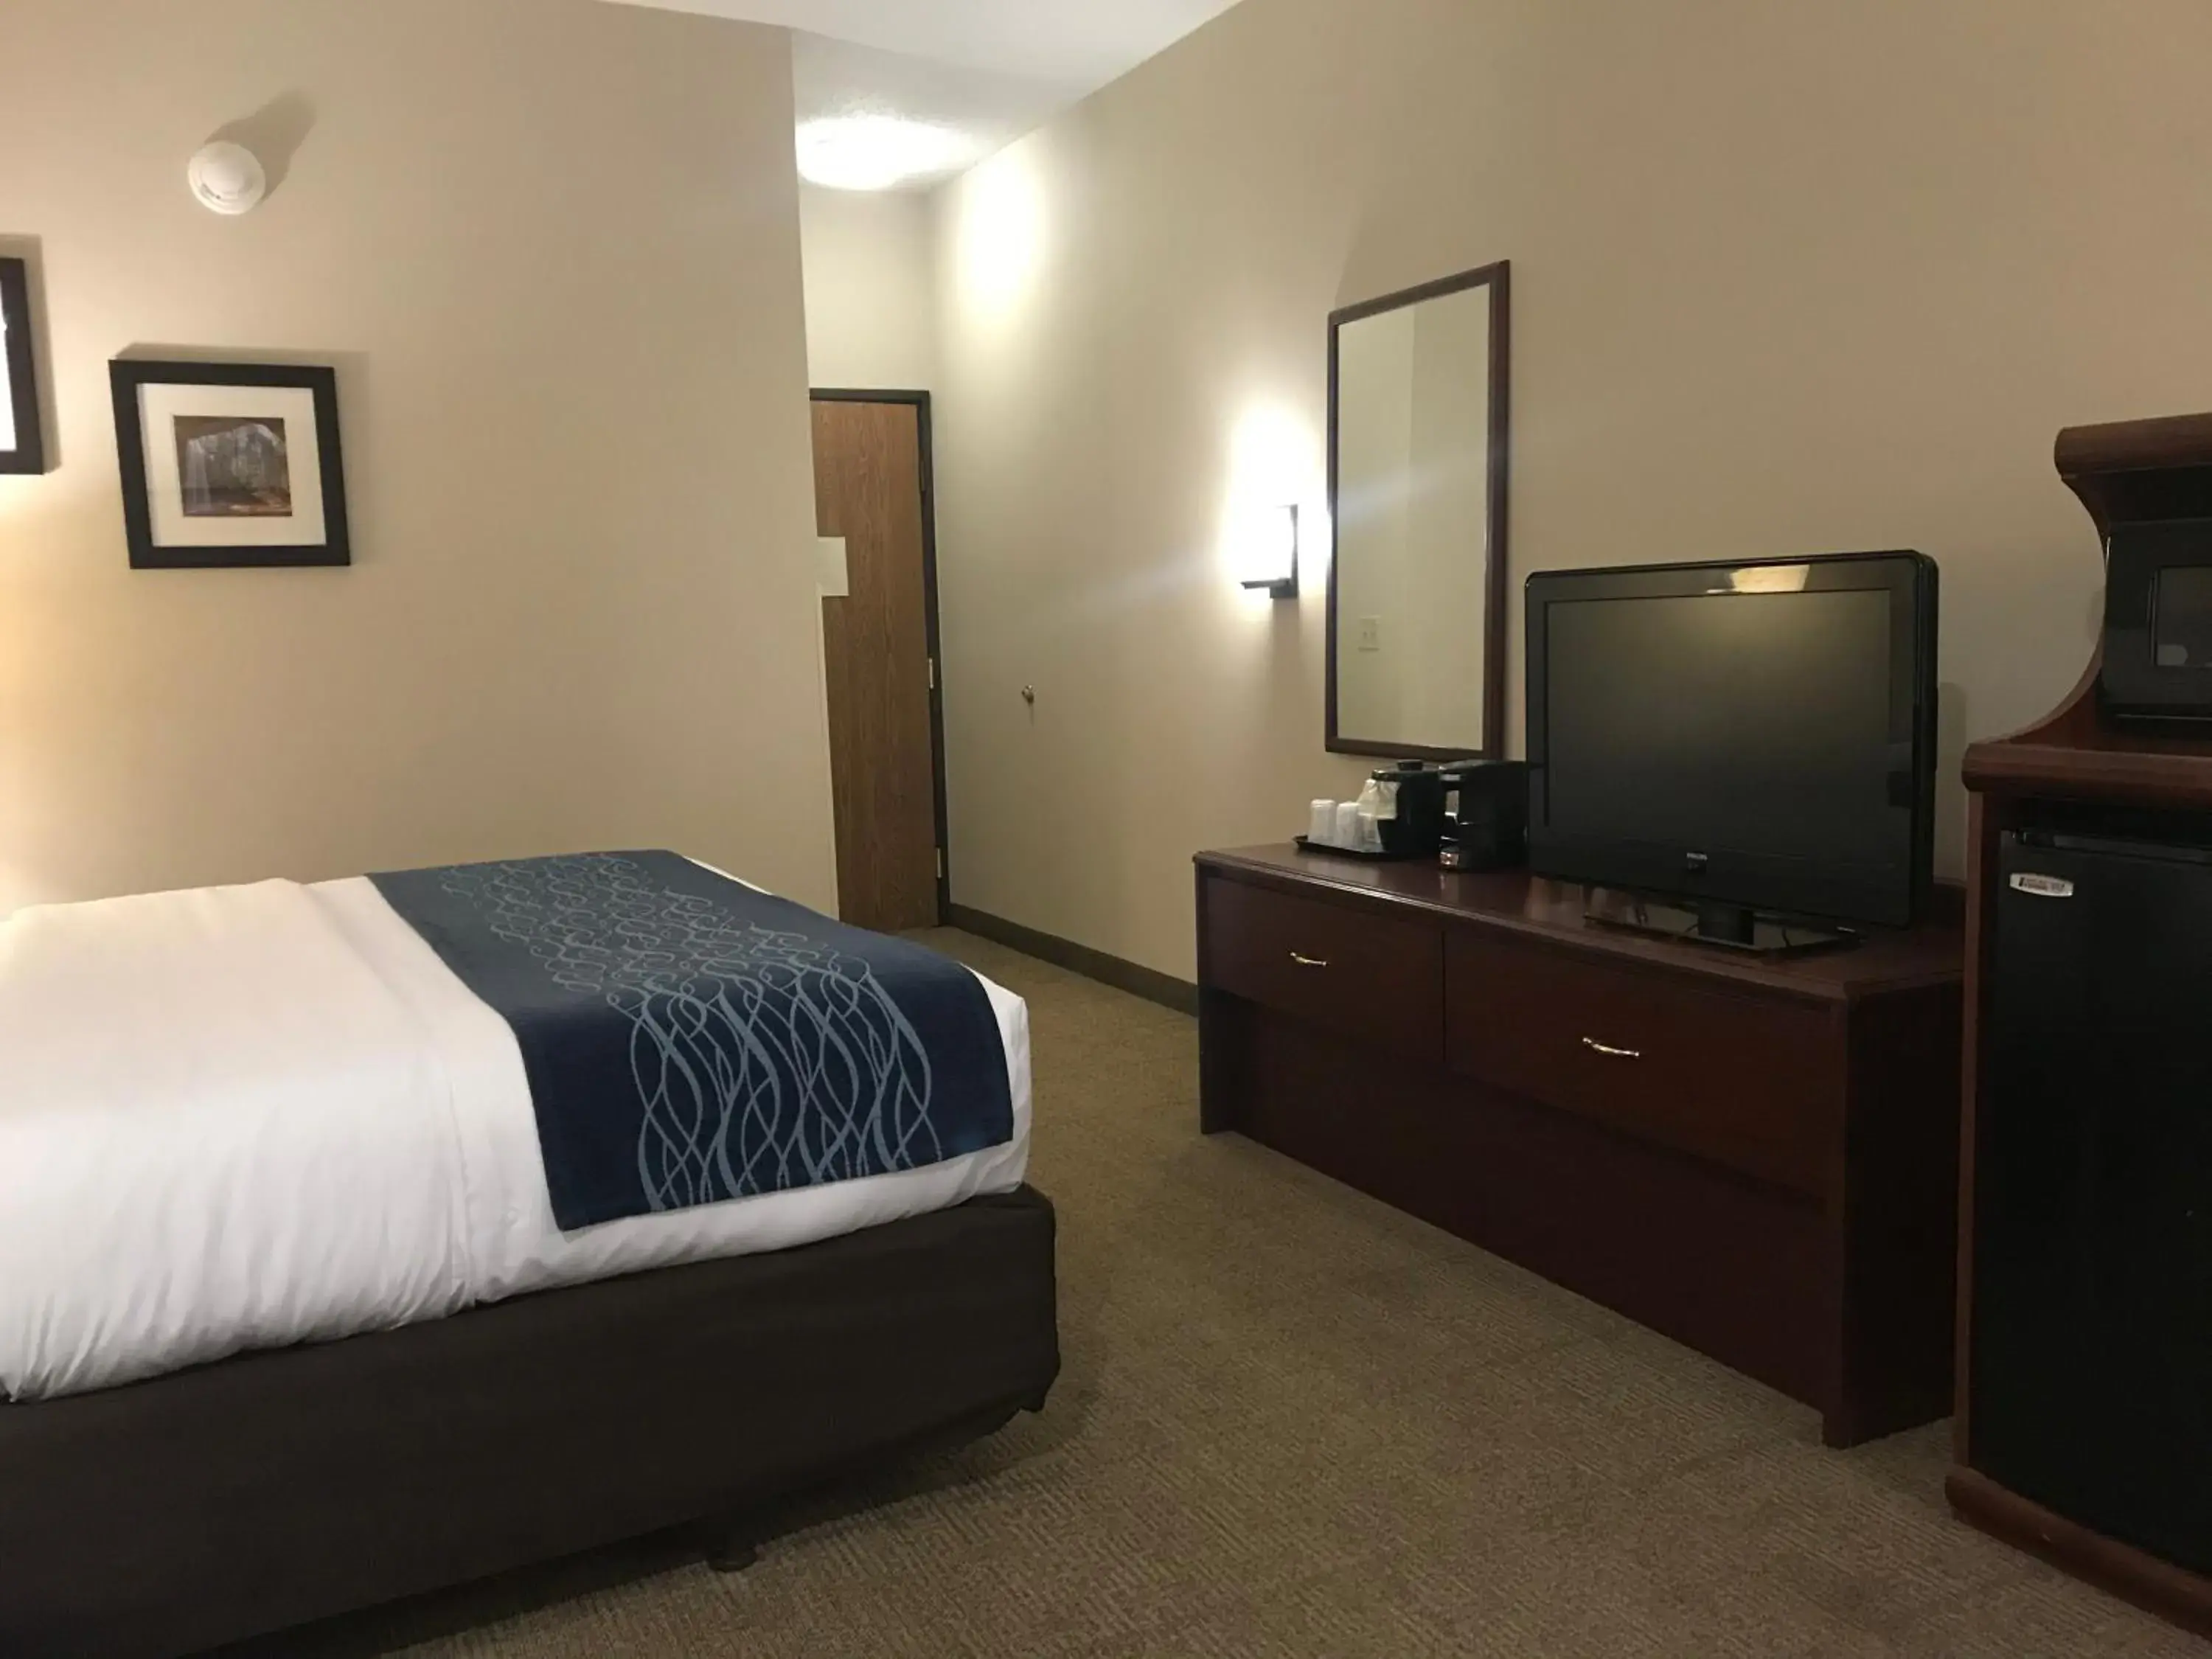 Bedroom, TV/Entertainment Center in Comfort Inn